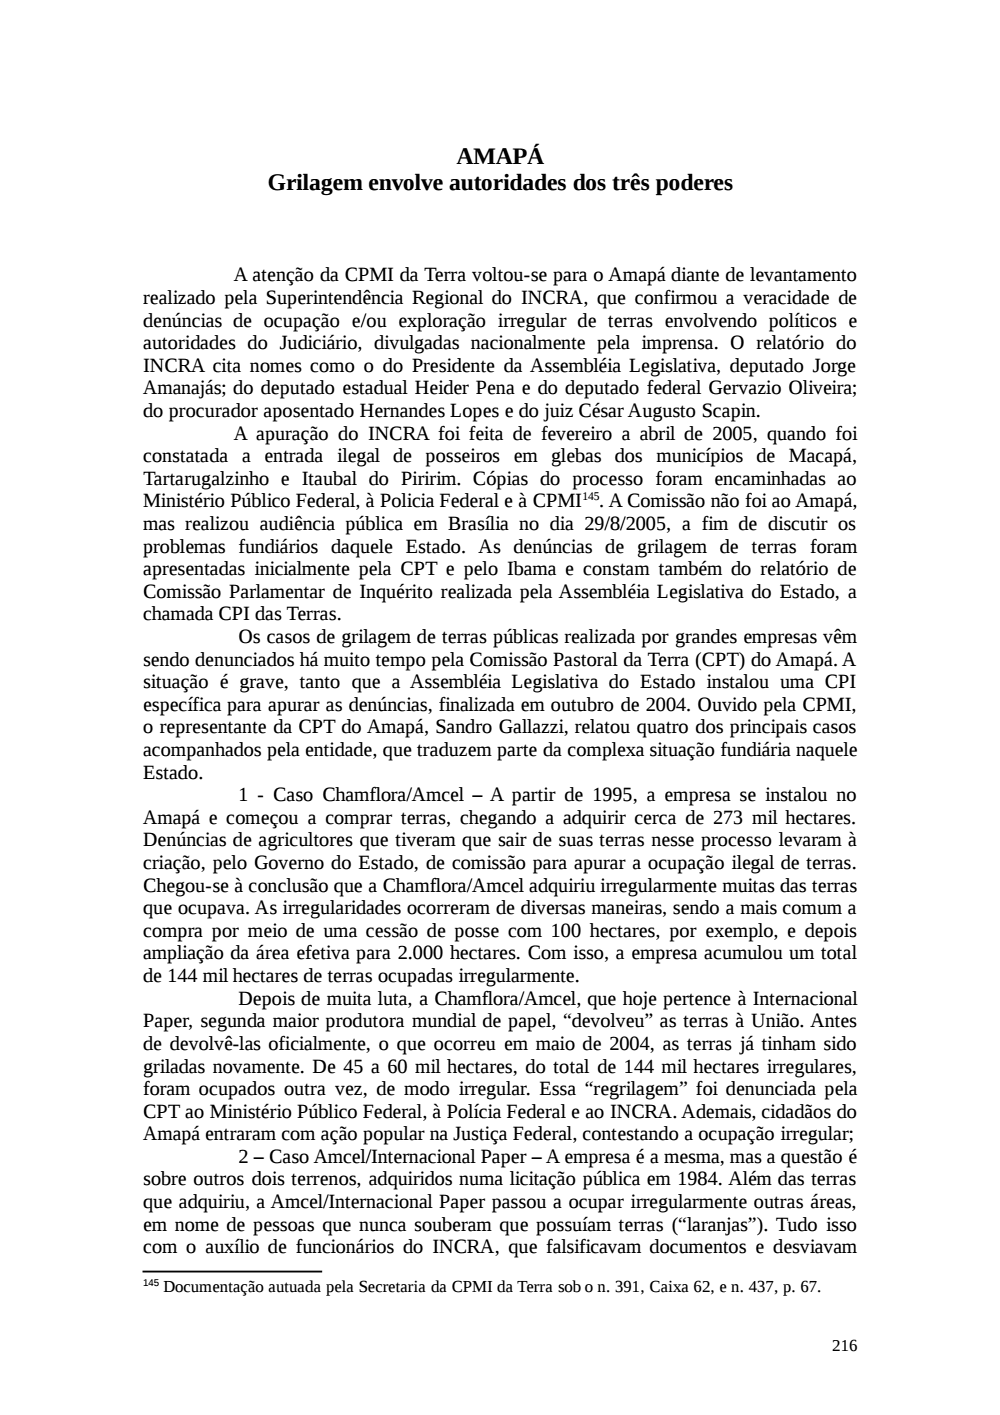 Page 216 from Relatório final da comissão